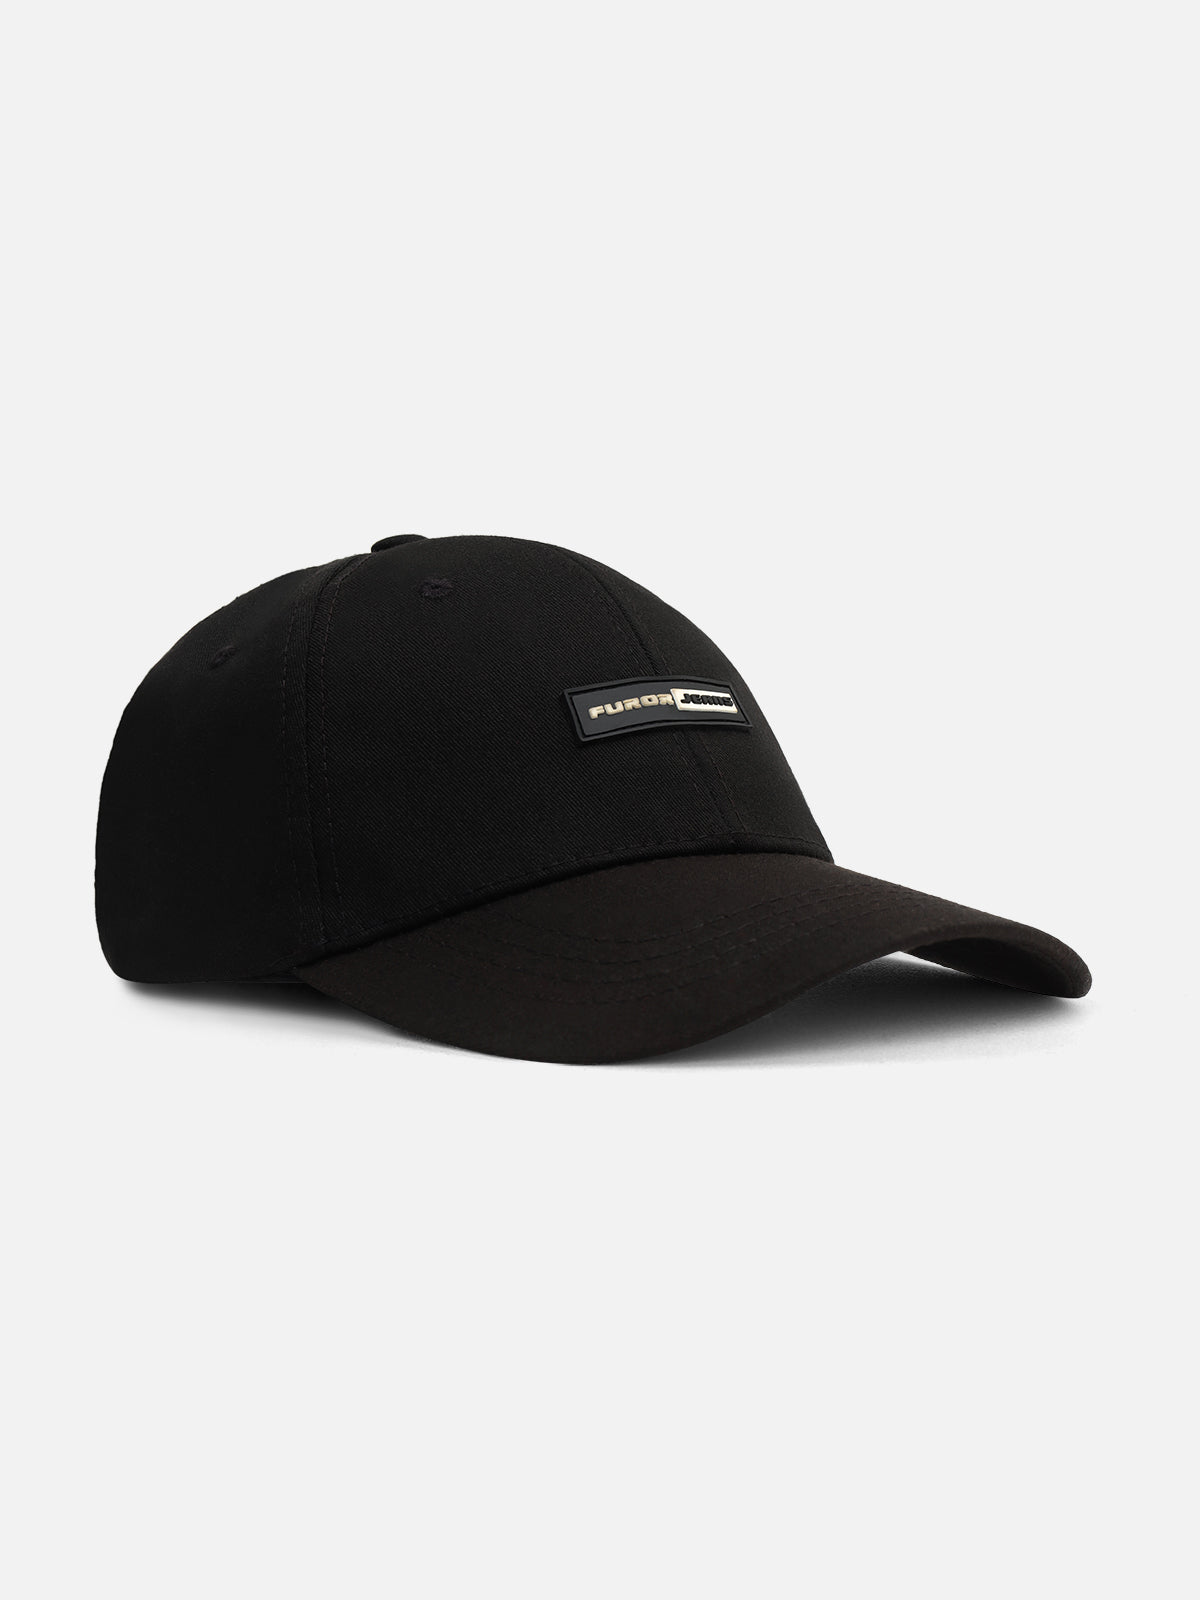 Black Baseball Cap - FAC24-039